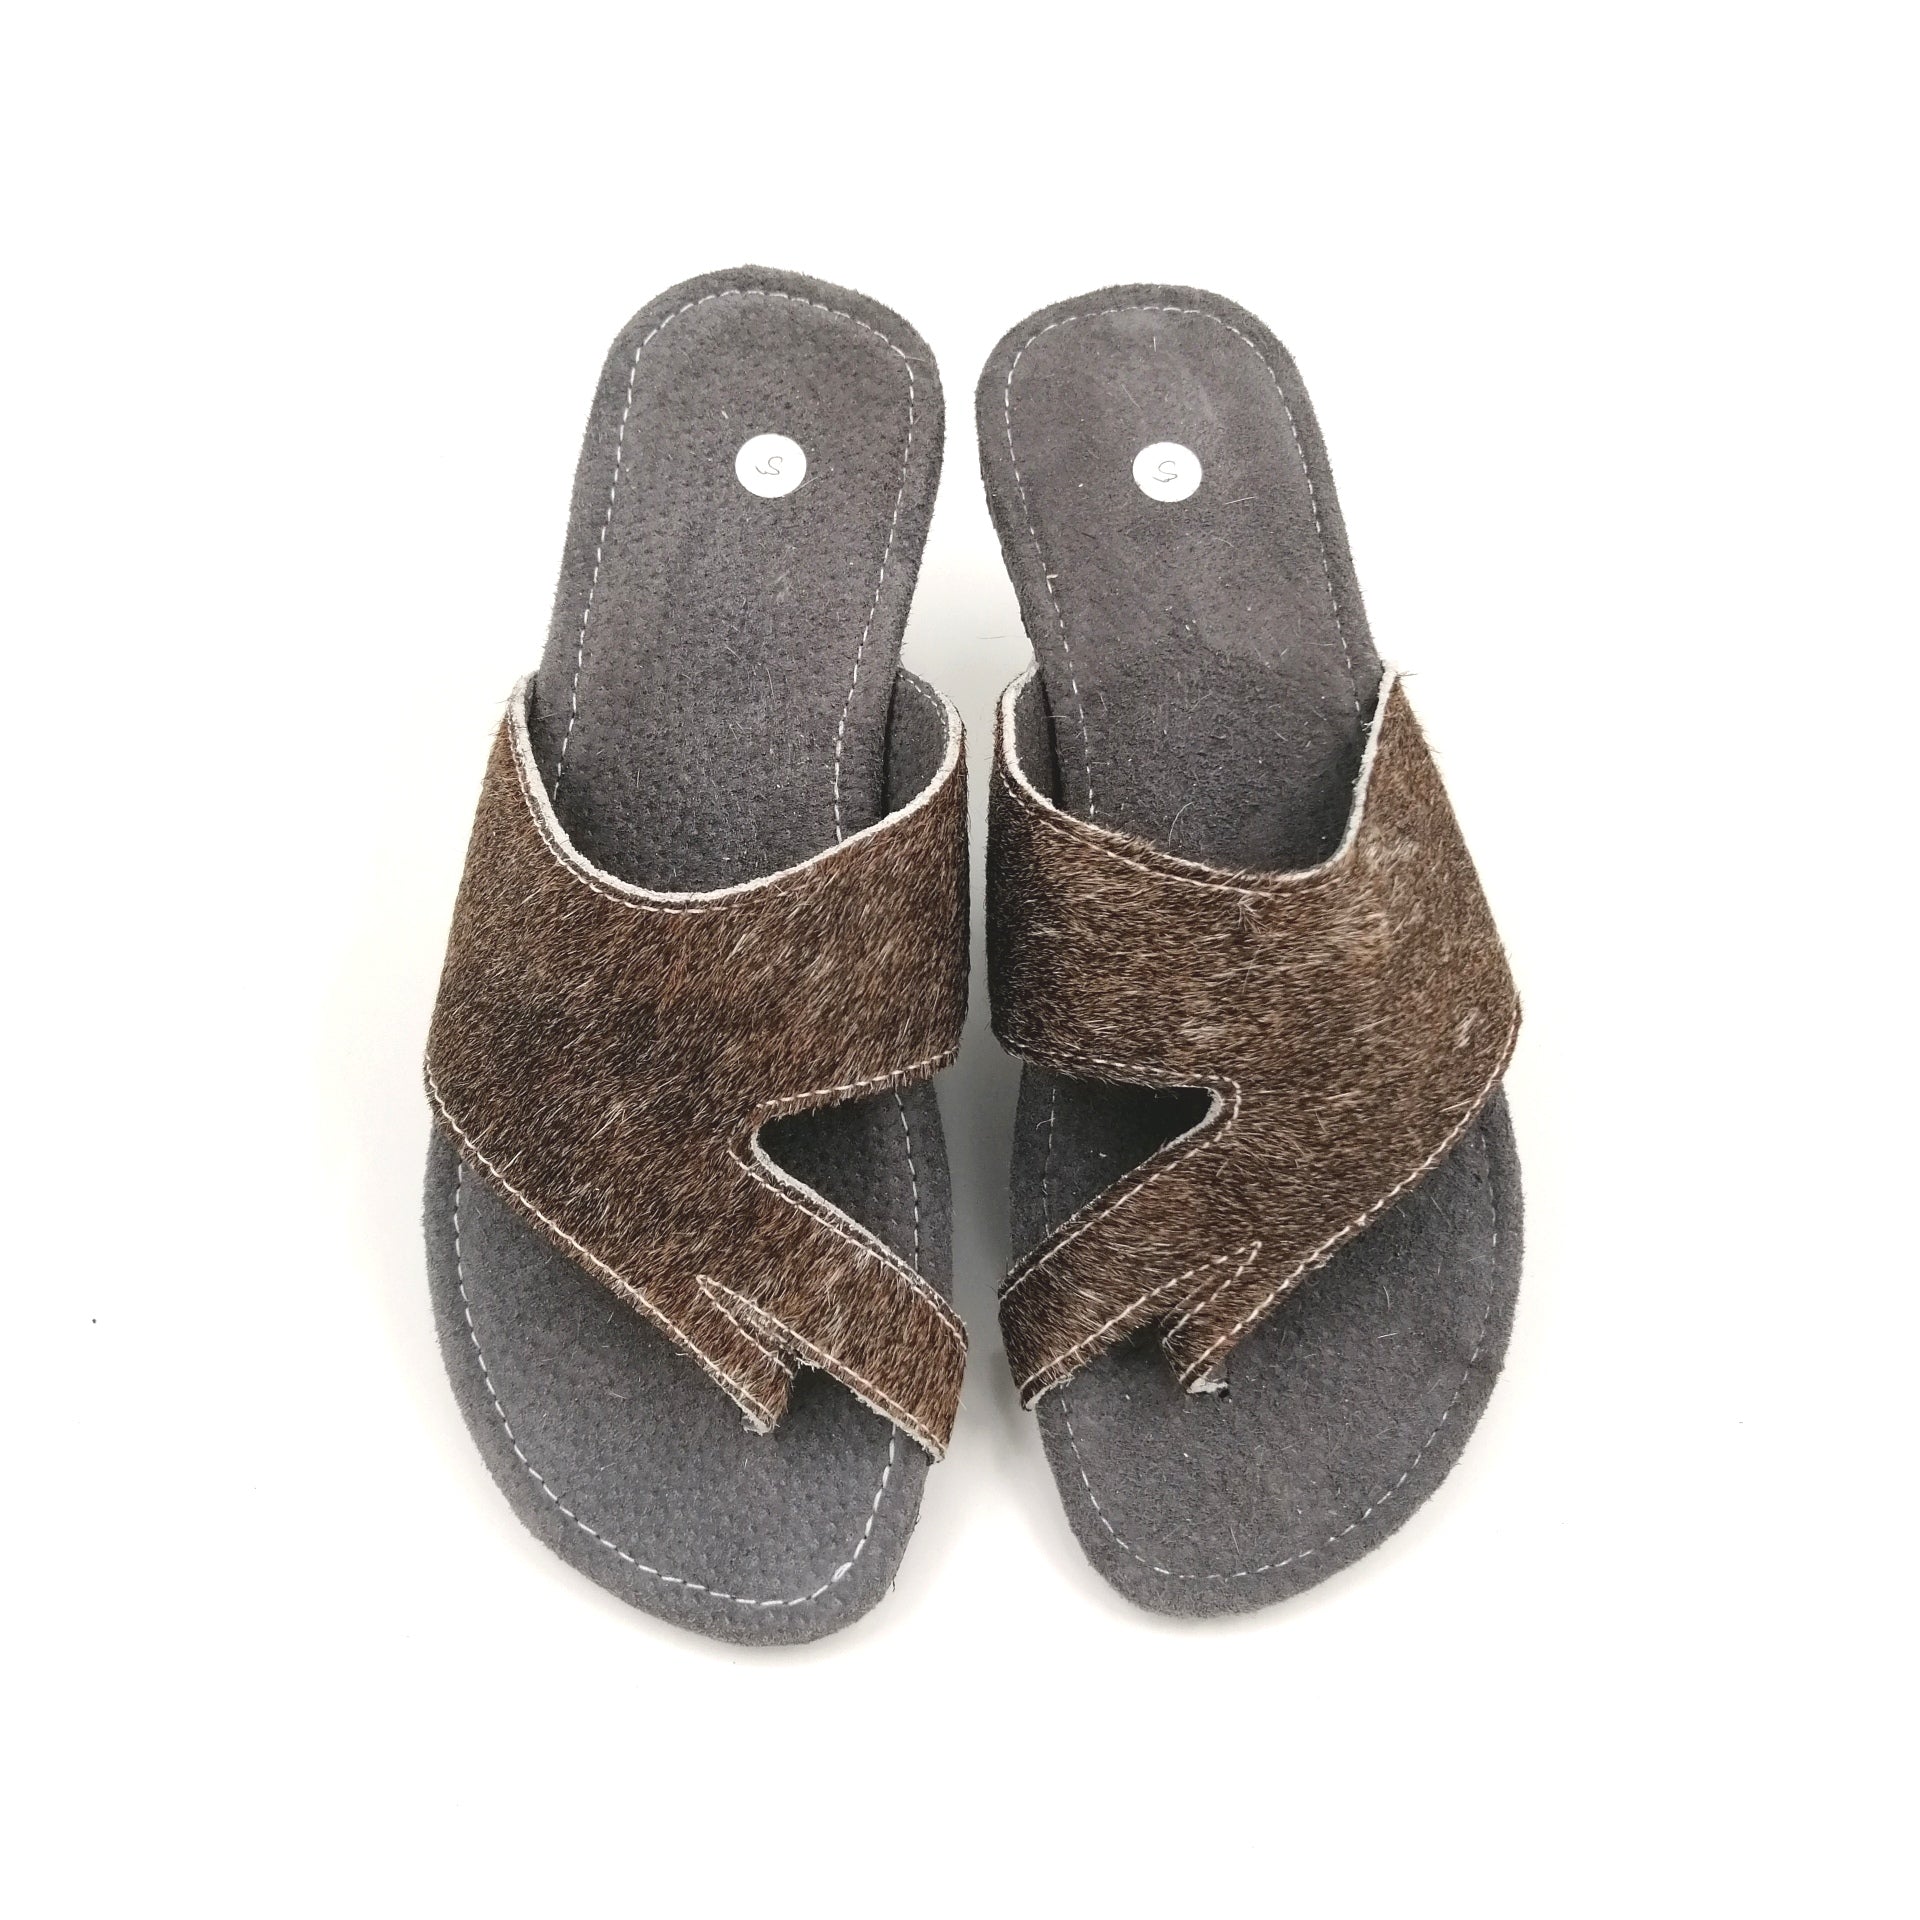 Sandals - SC20-SAN05-16 - Size 5